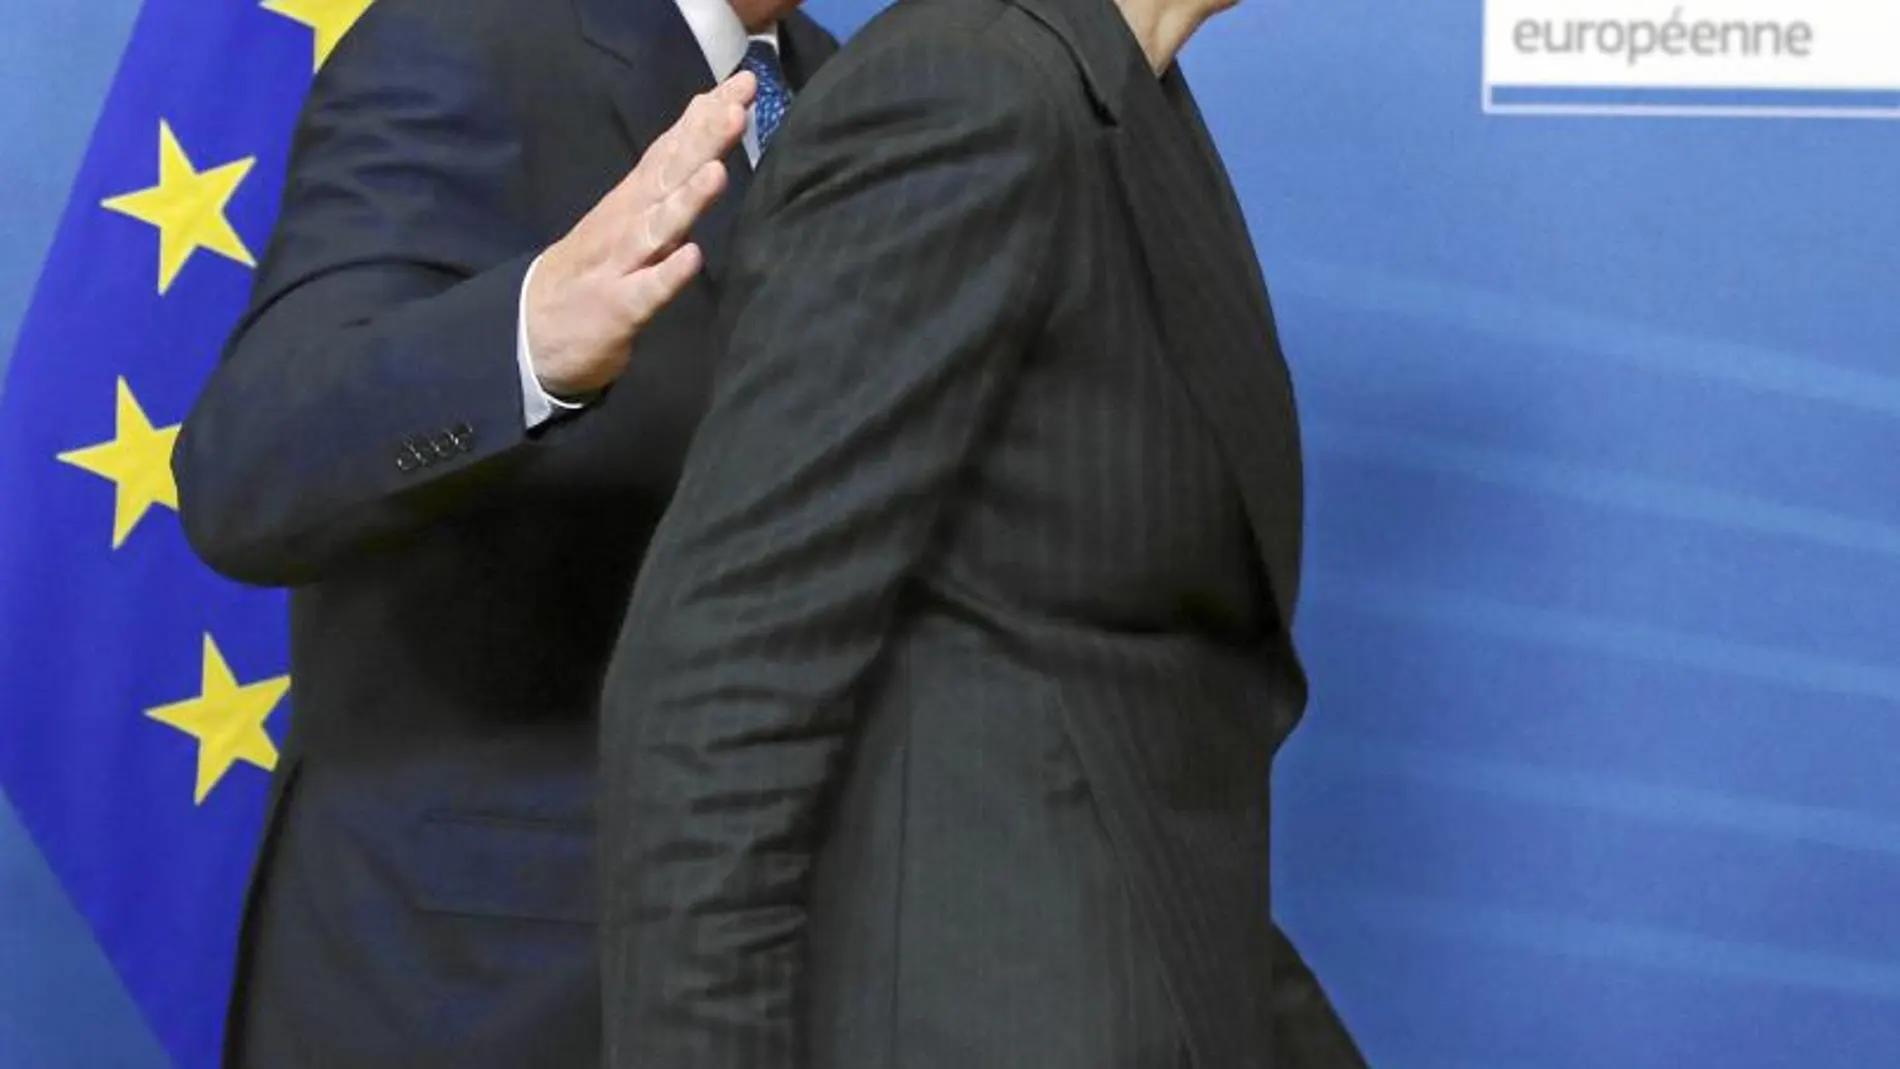 El presidente de la Comisión, Jean Claude Juncker, da una palmada a la primera ministra británica, Theresa May, a su llegada a la sede europea, ayer